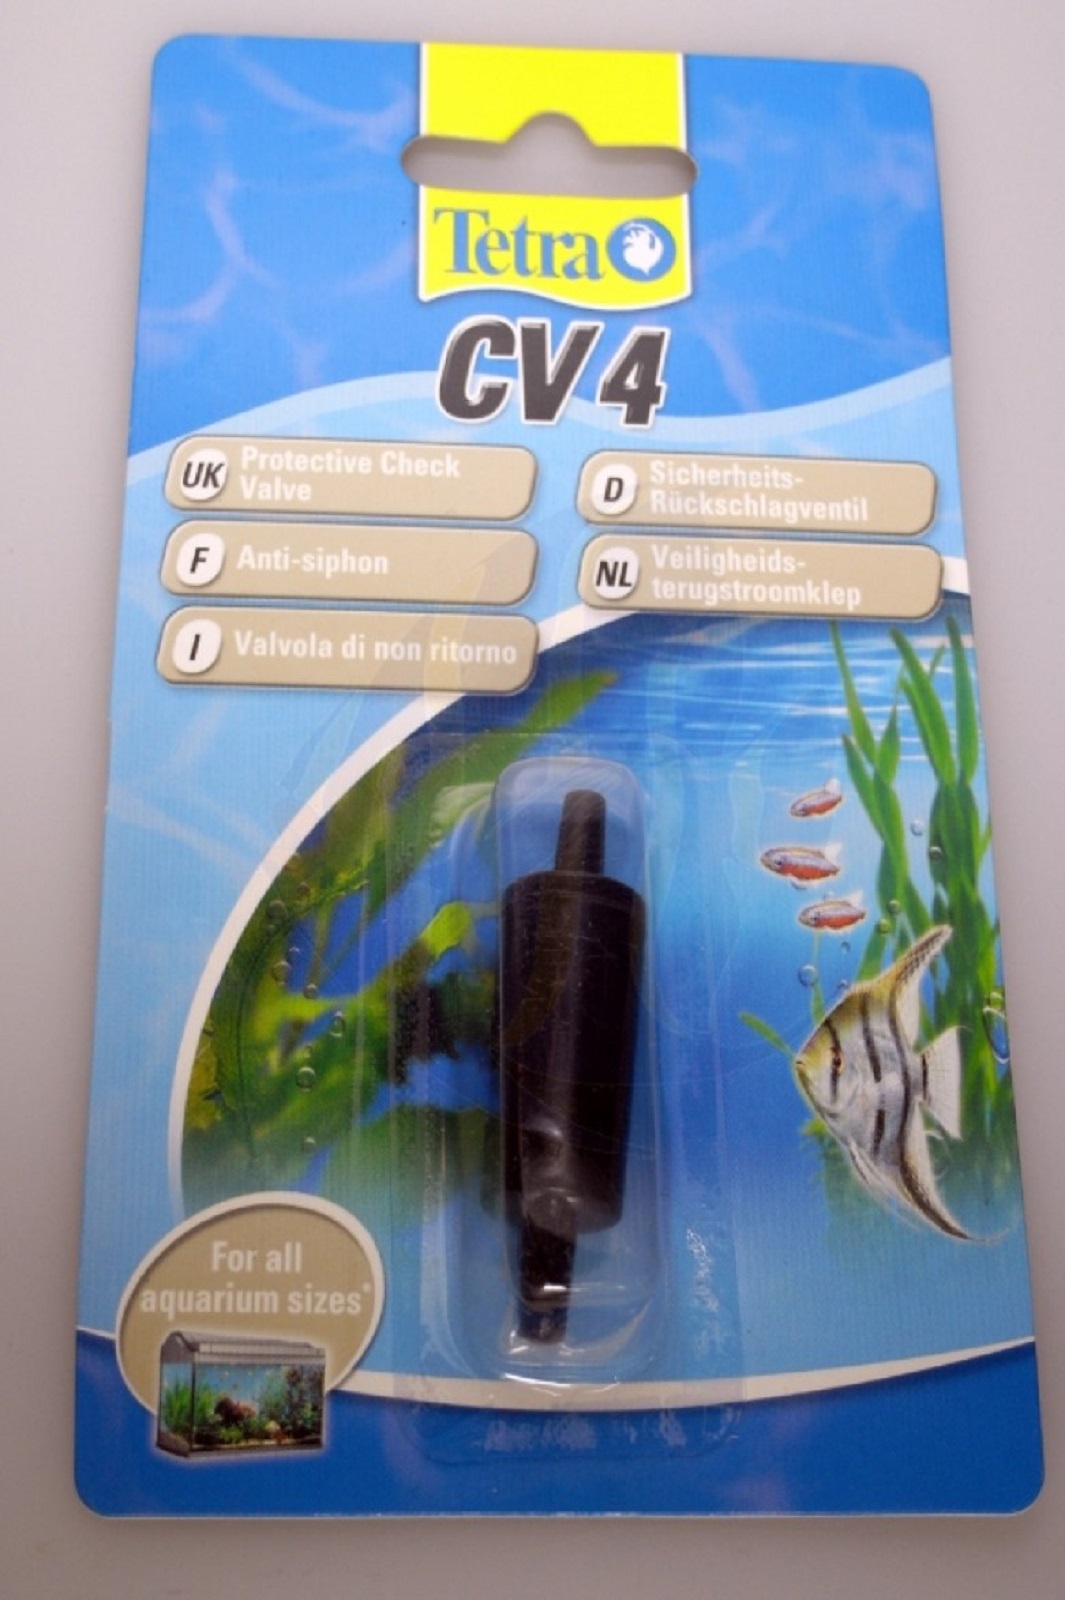 Tetra CV4 Rückschlagventil Aquarium Sicherheitsventil für alle Luftmembranpumpen